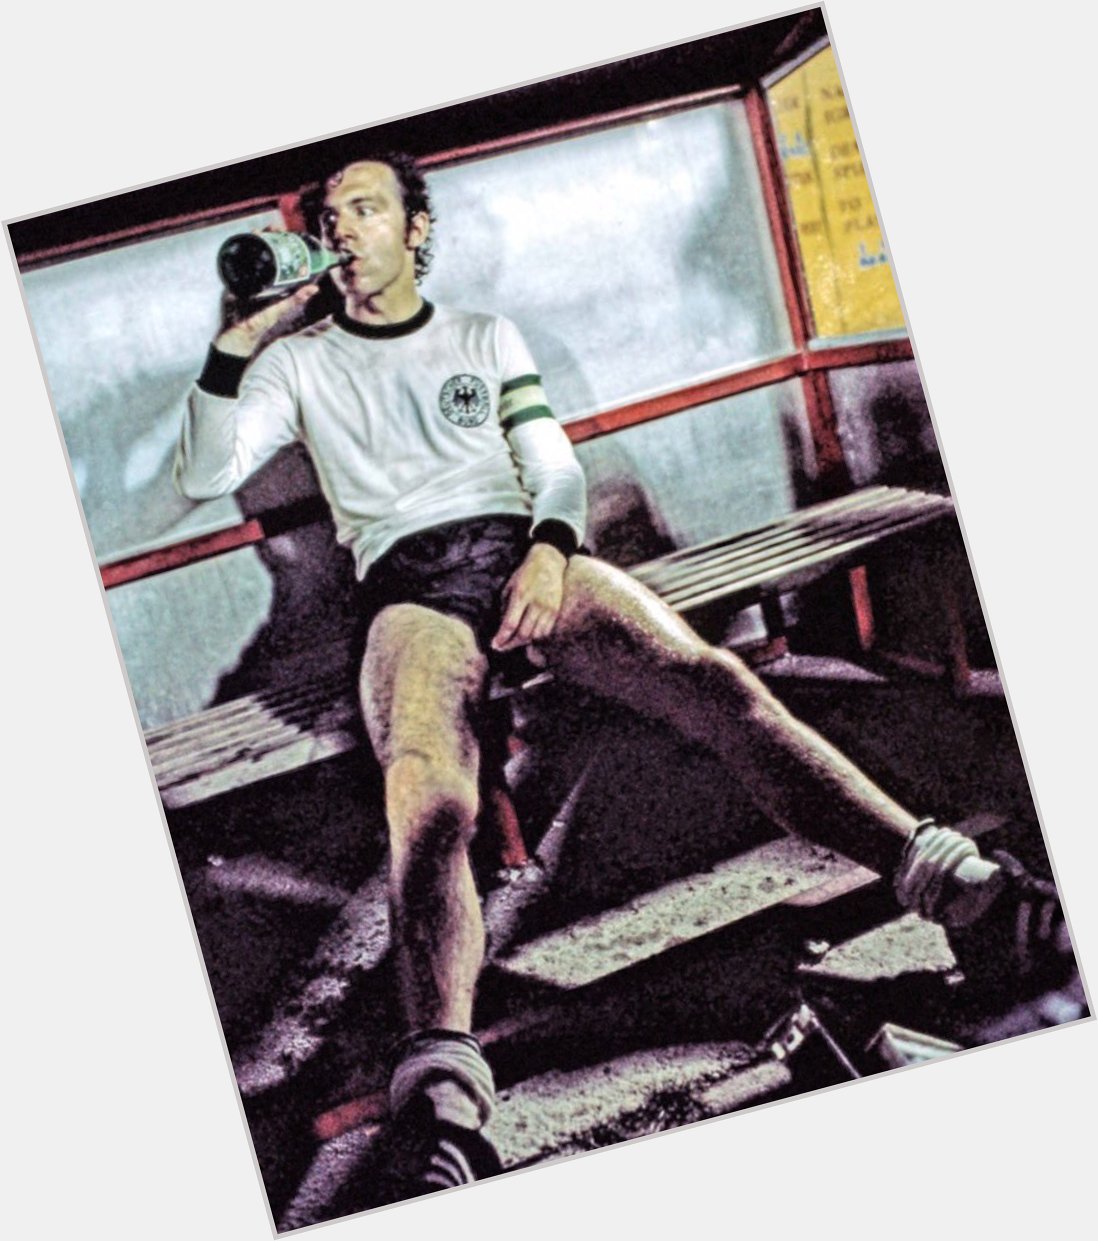 Happy 73rd birthday, Der Kaiser, Franz Beckenbauer! 